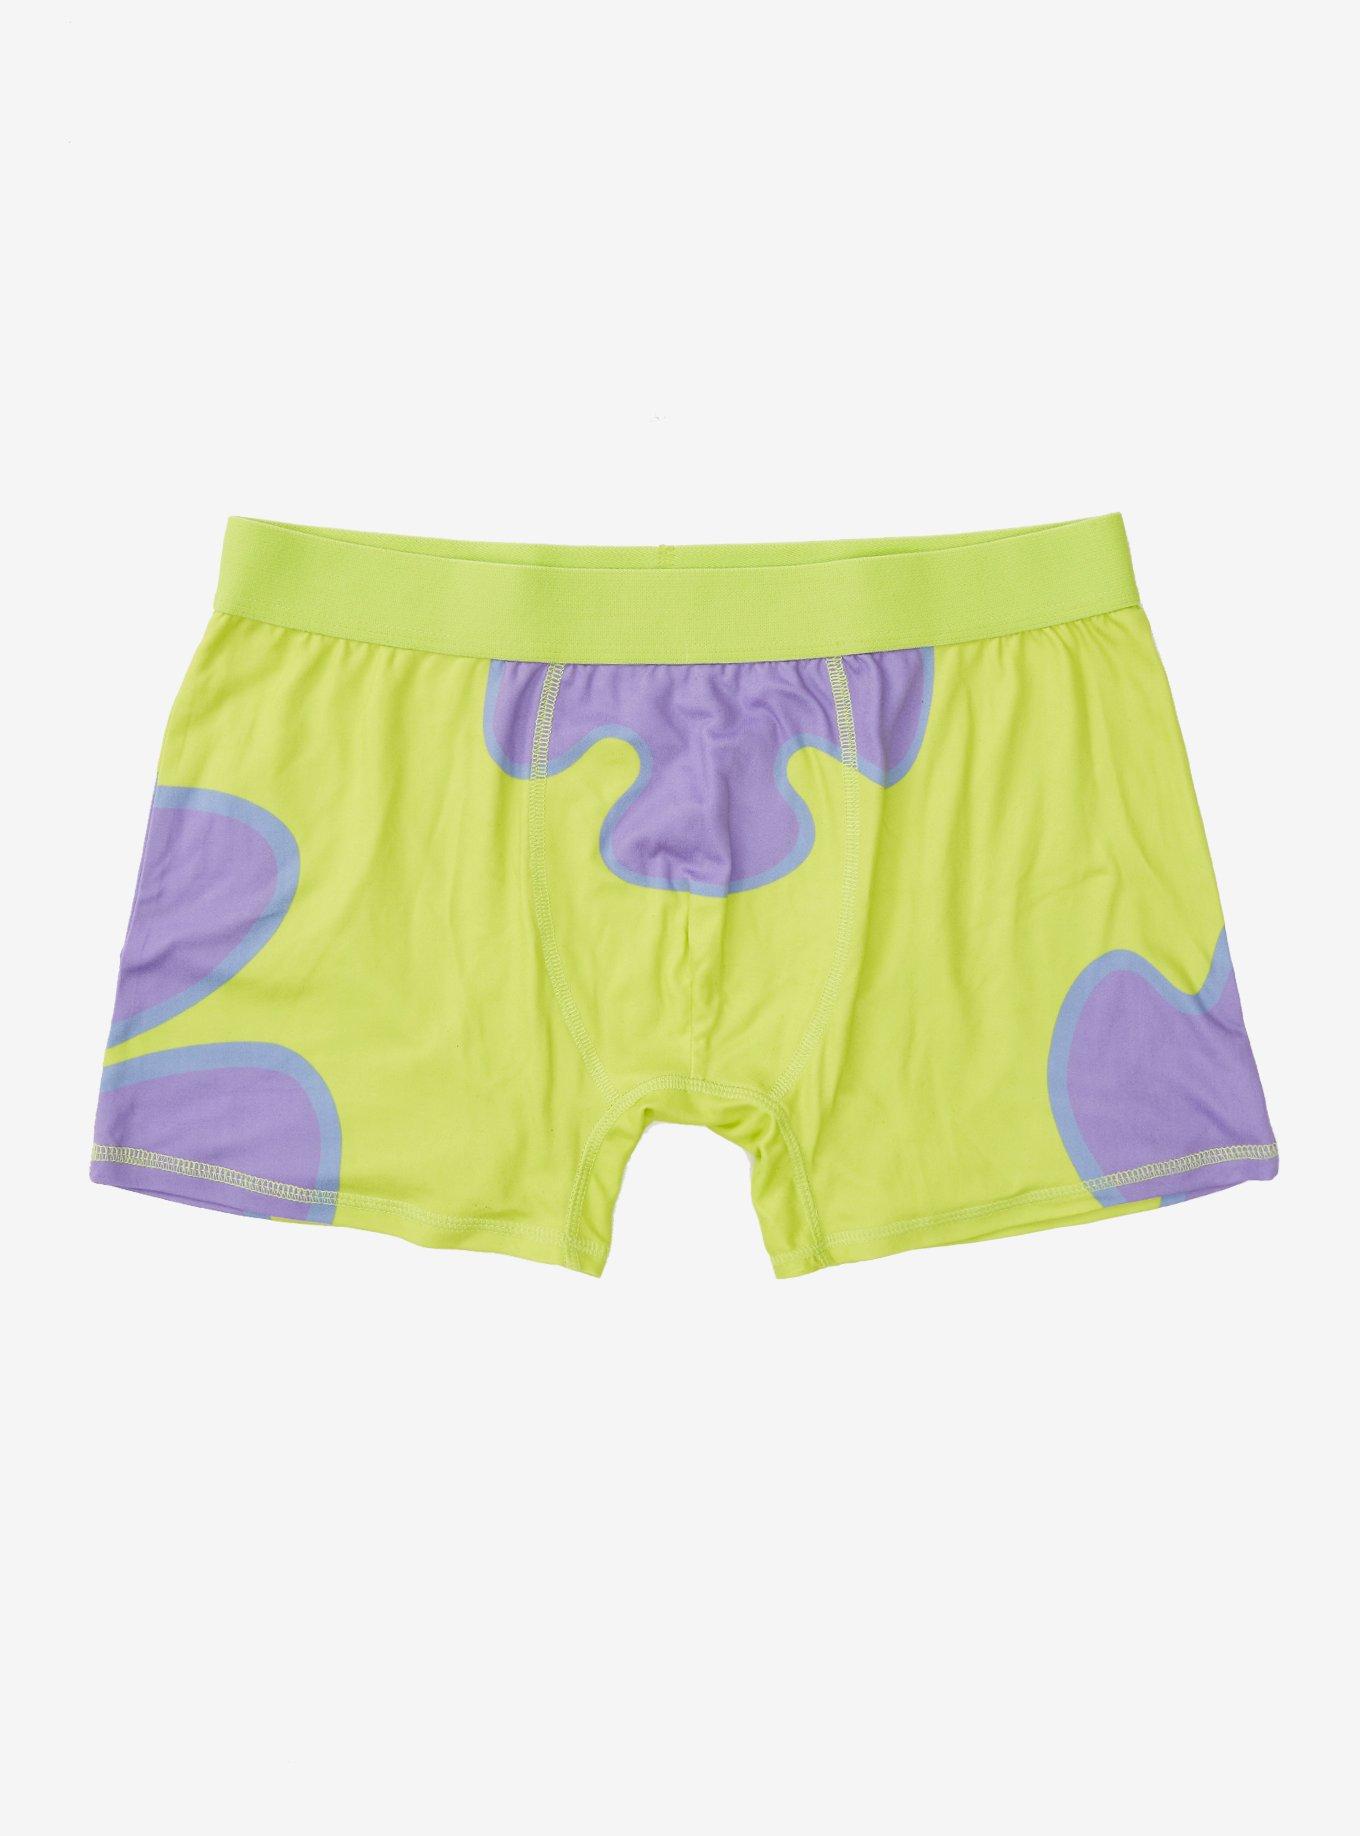 Spongebob underwear meme Art Board Print for Sale by